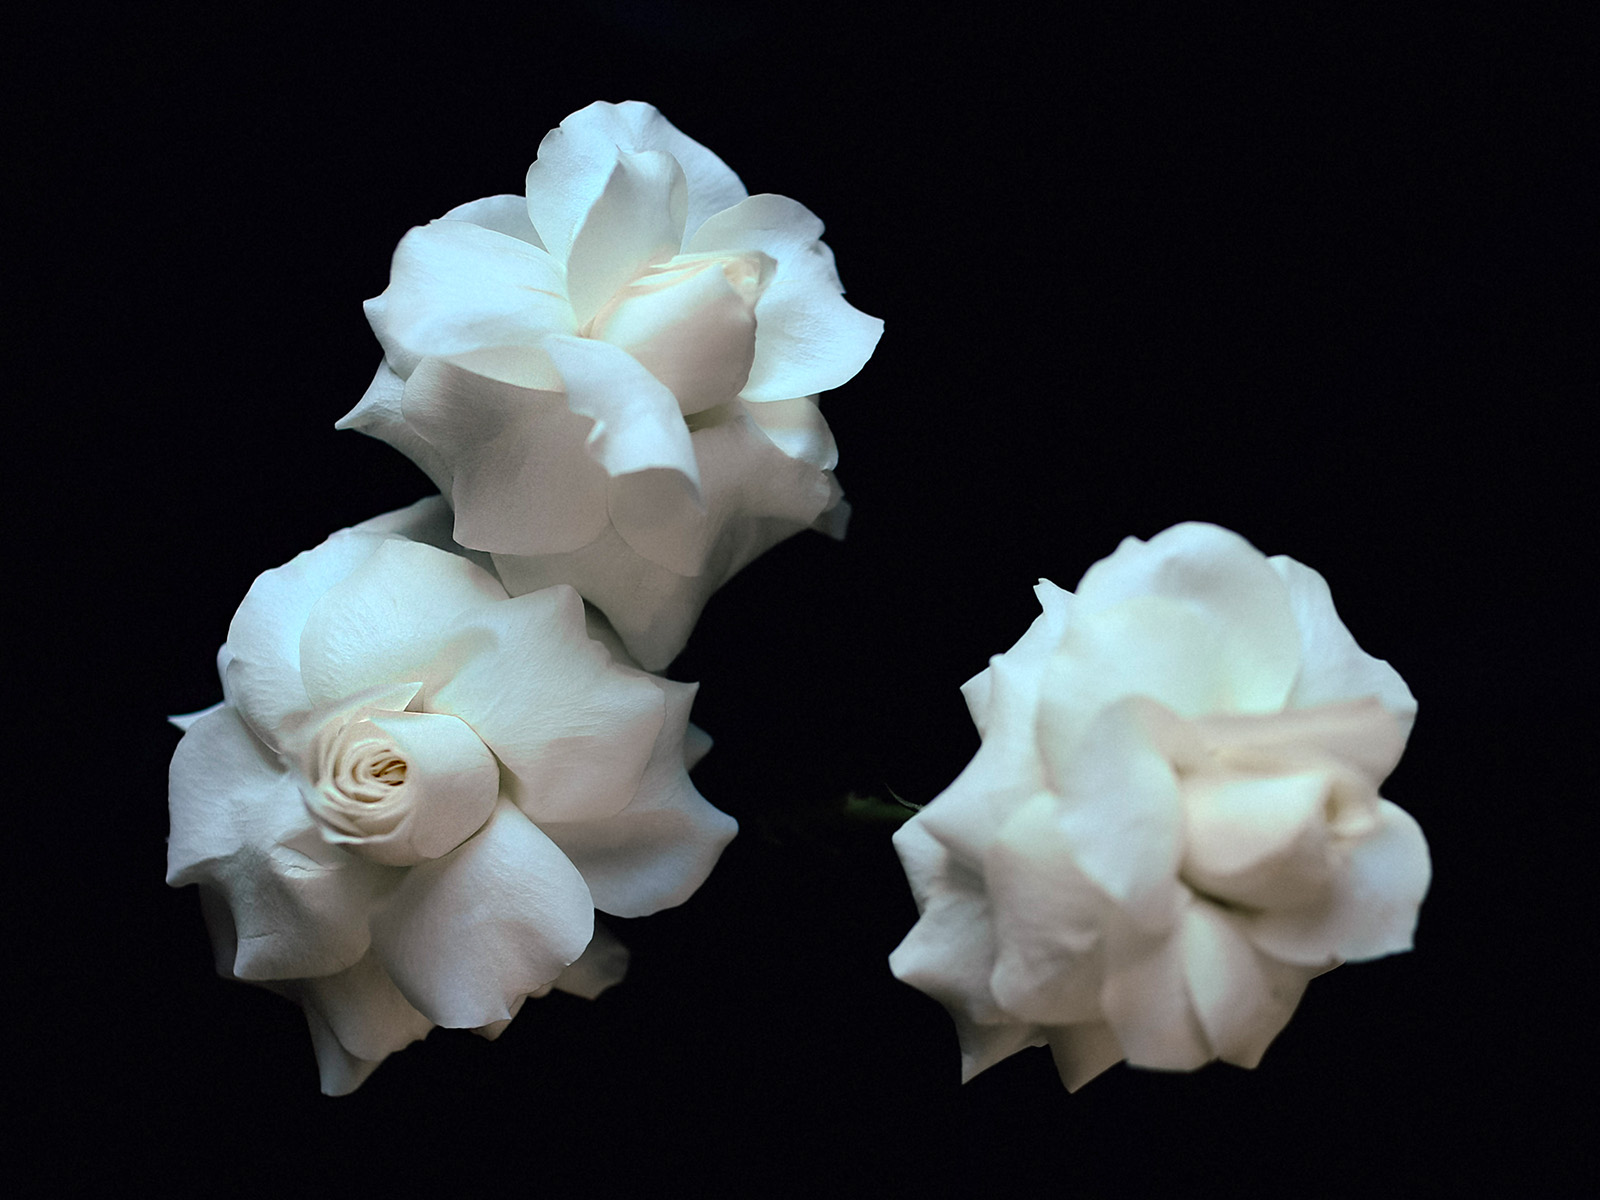 White Roses by Lis-Art on Thursd